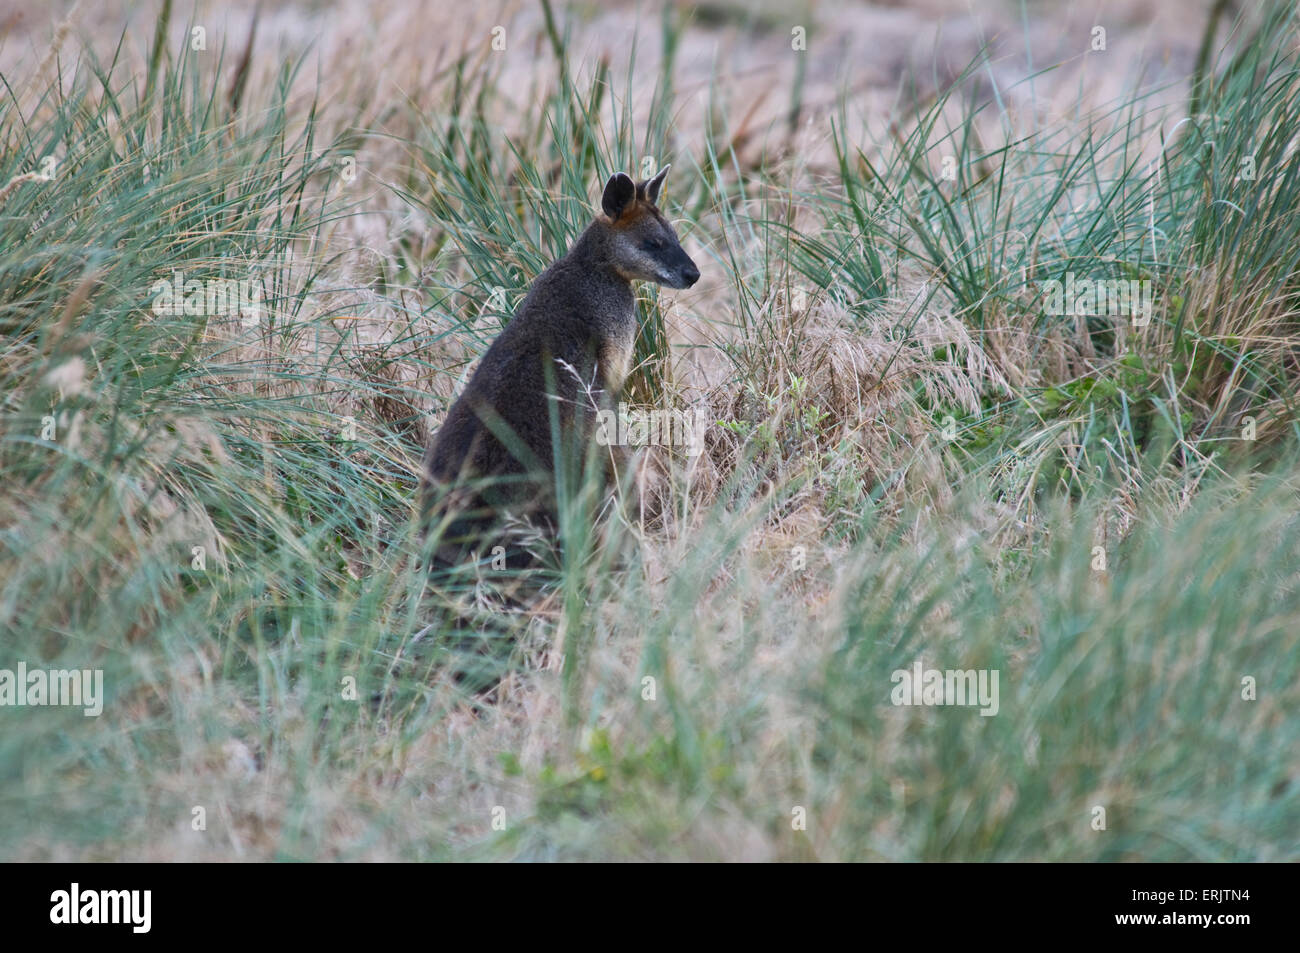 Kangaroo in Grass Stock Photo